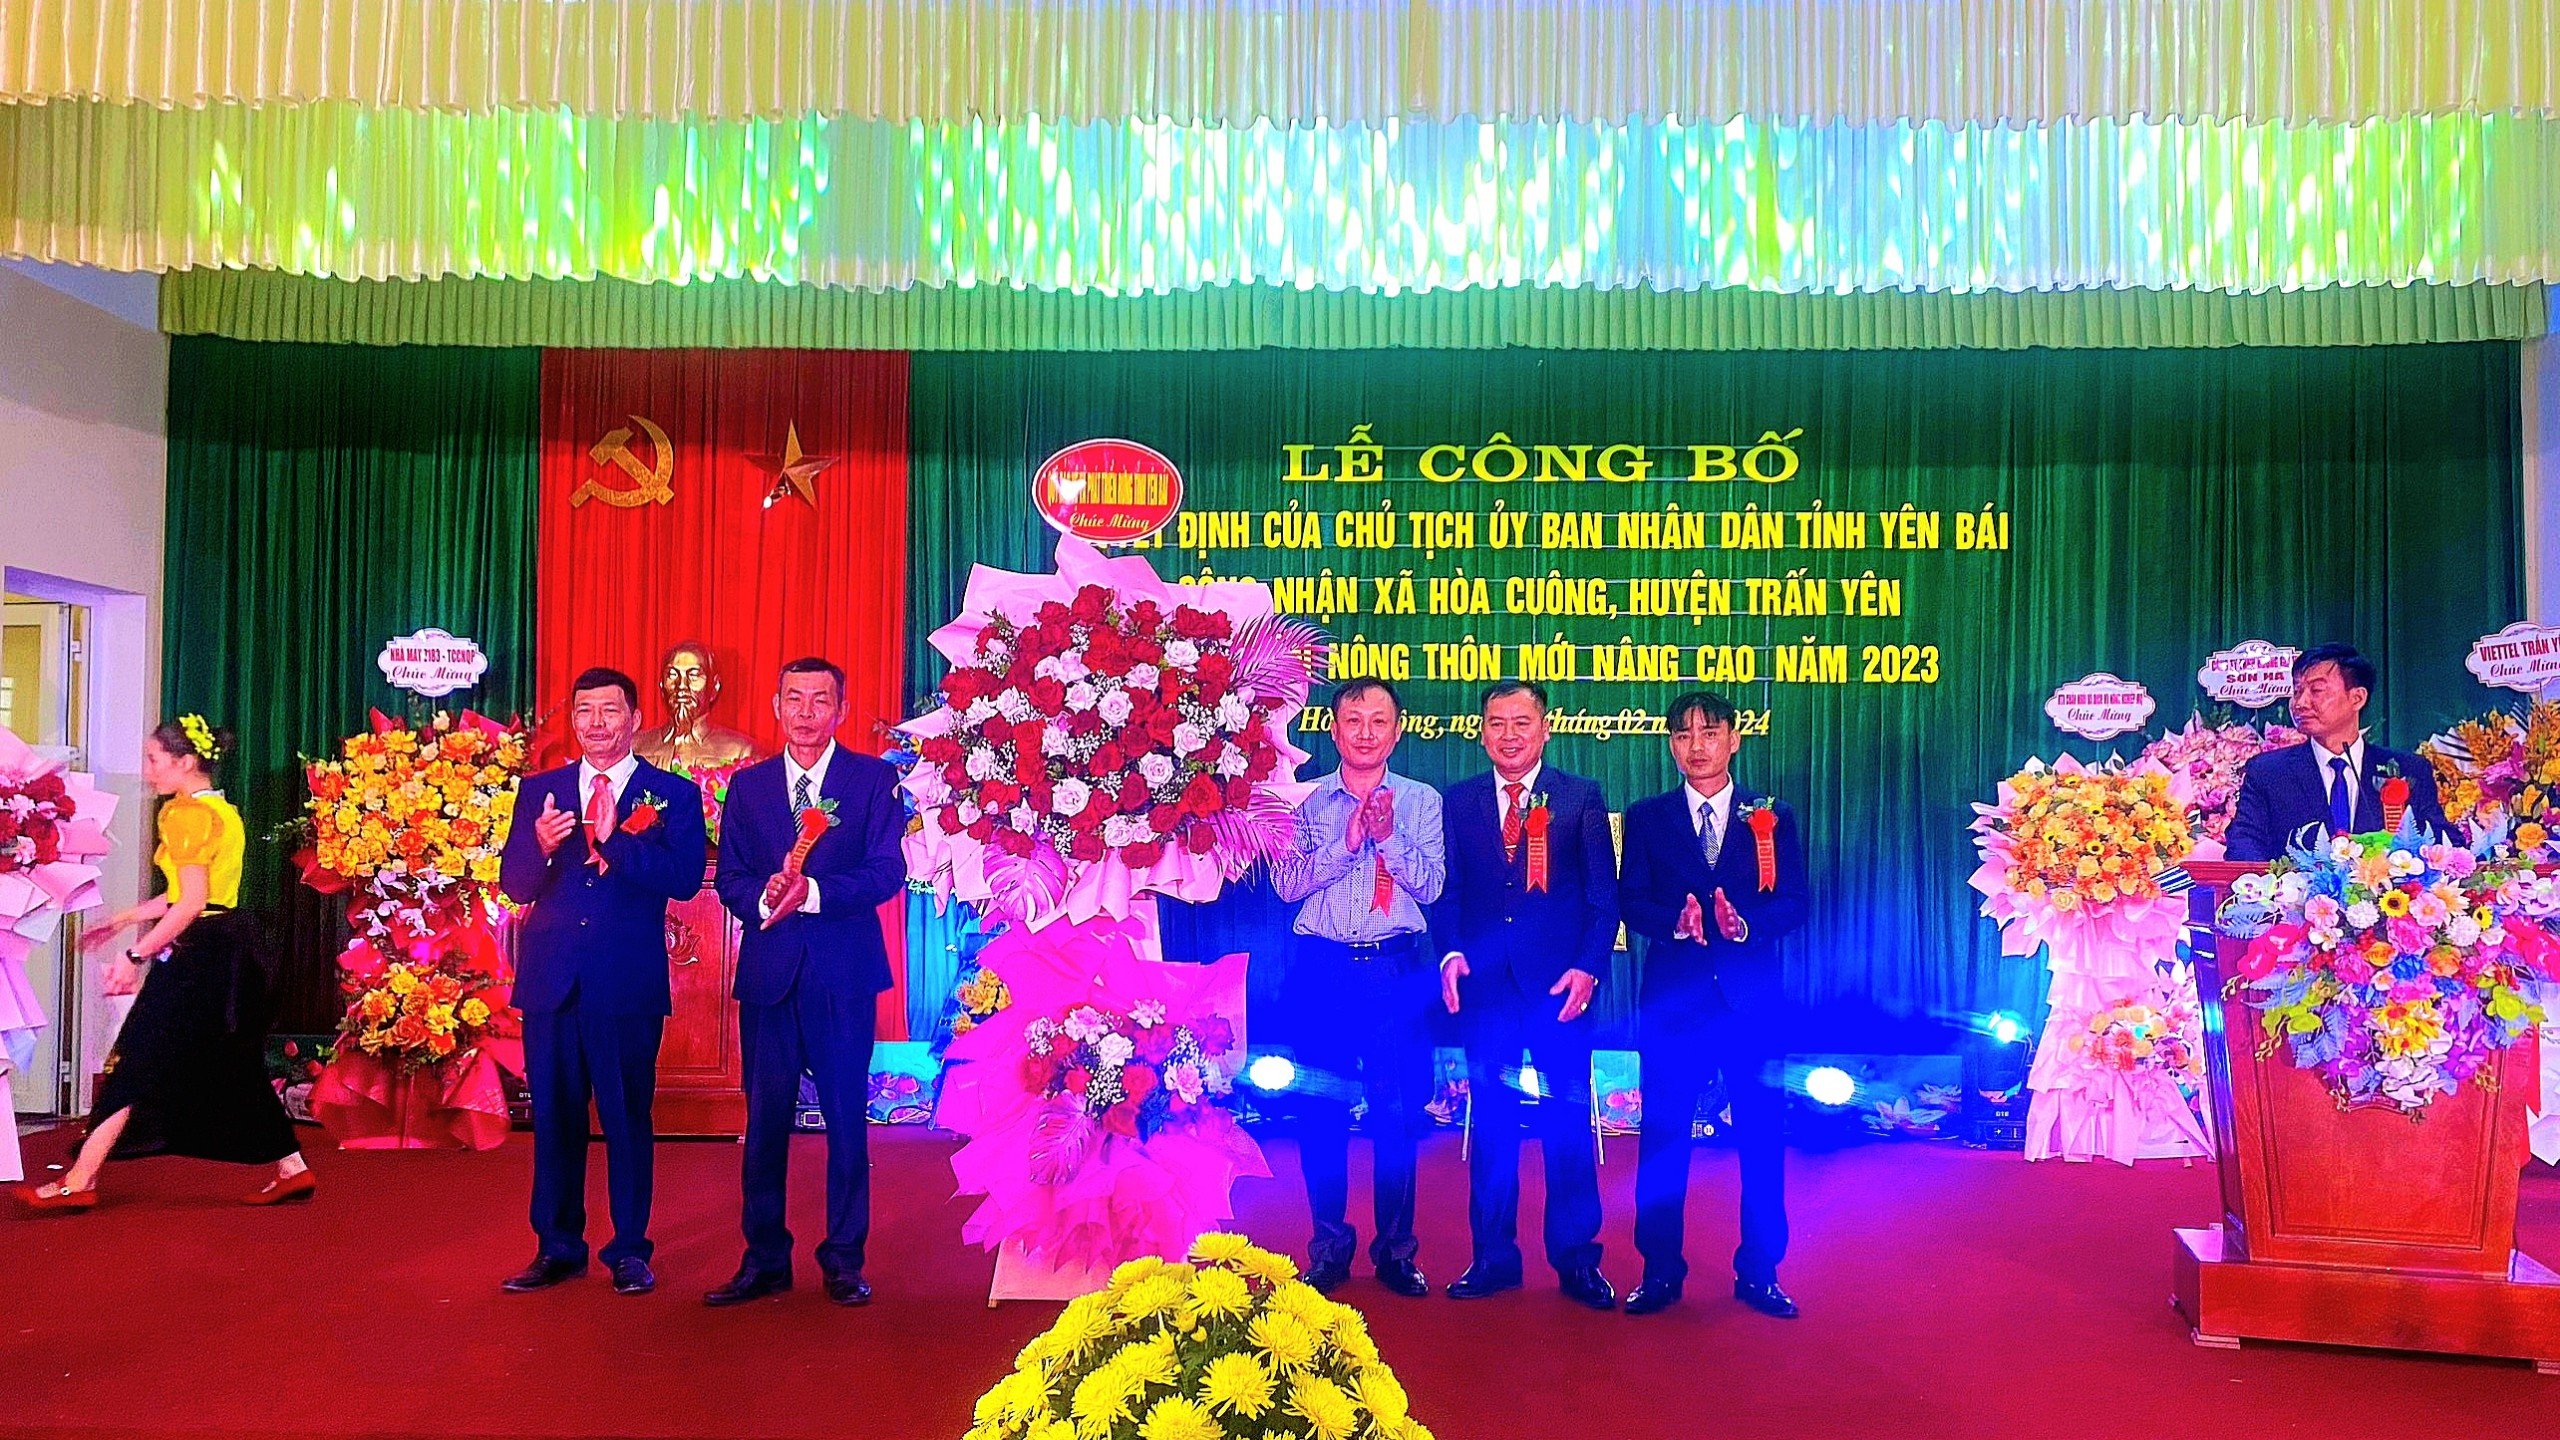  Quỹ Bảo vệ và phát triển rừng tỉnh Yên Bái dự lễ công bố xã Hòa Cuông, huyện Trấn Yên đạt chuẩn nông thôn mới nâng cao